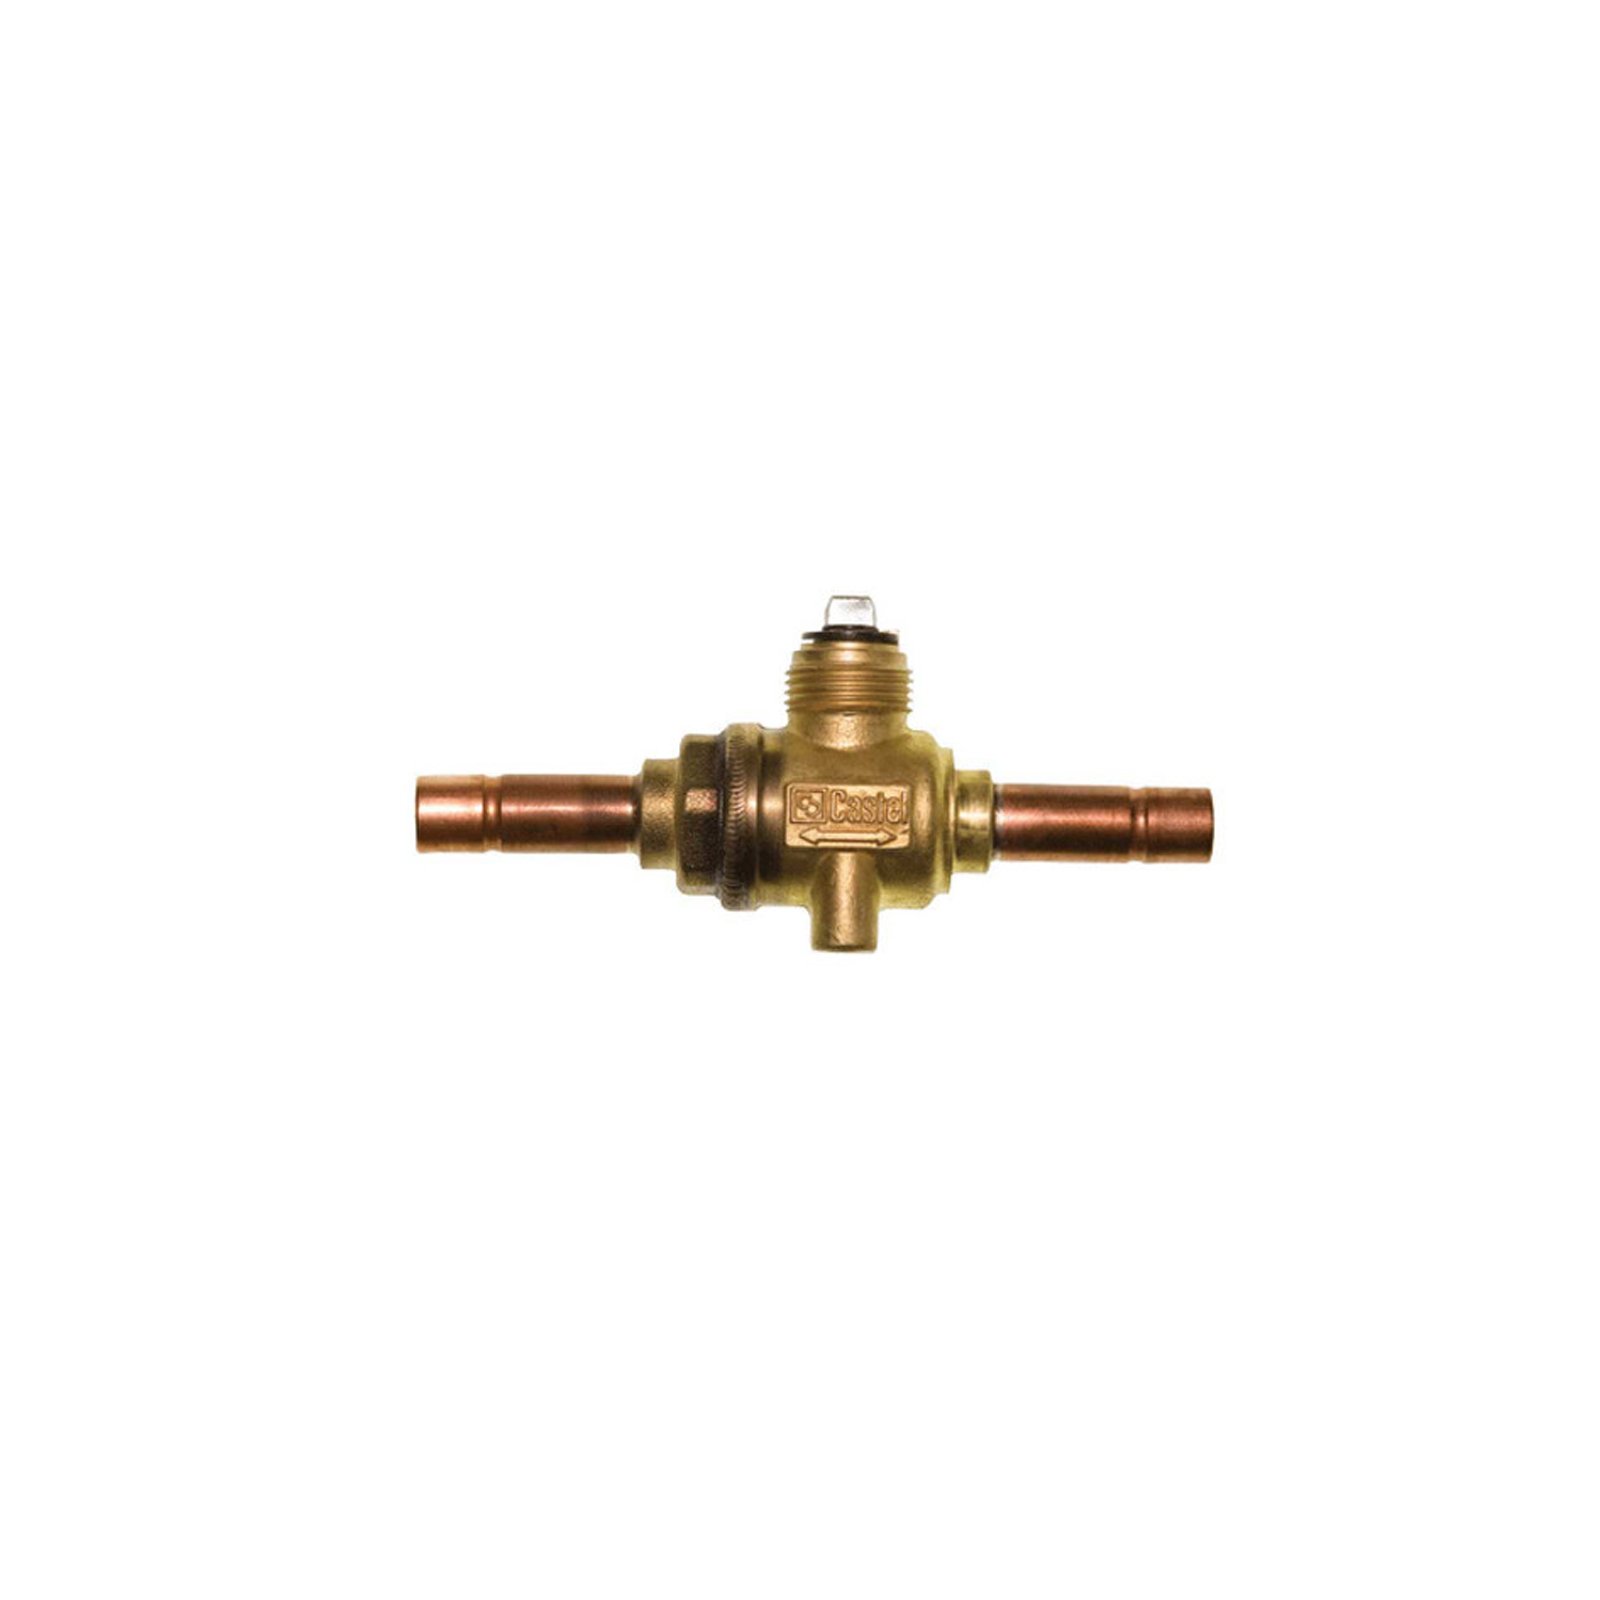 Ball valve Castel 6590 / M28, 28 mm ODS solder